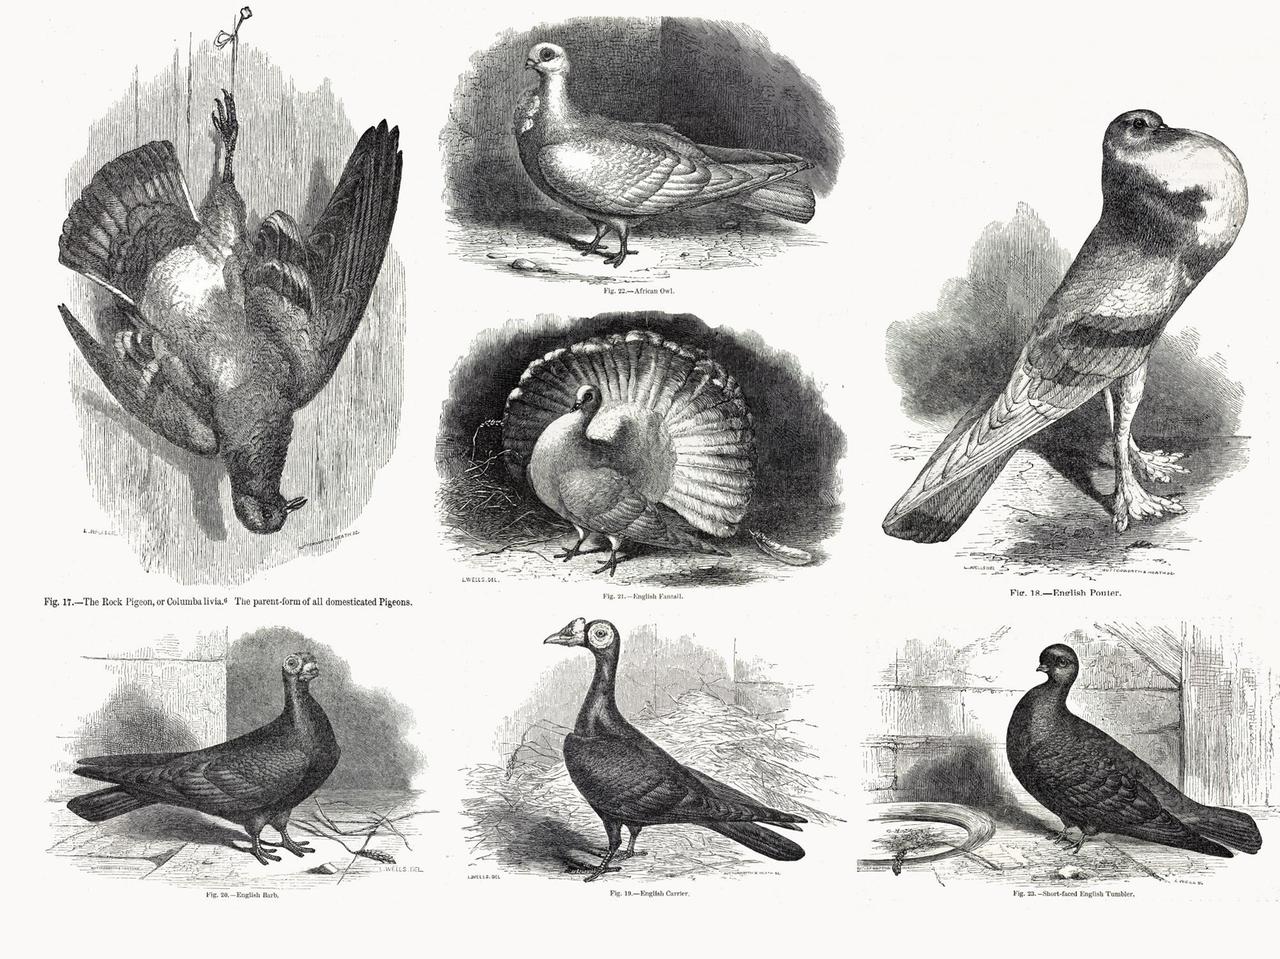 Zusammenstellung von Original-Zeichnungen aus Darwins "Variation in Animals and Plants under Domestication" von 1868: die Felsentaube (oben links) und einige Arten, die durch künstliche Selektion (selektive Züchtung nach Merkmalen) aus der Felsentaube hervorgegangen sind.